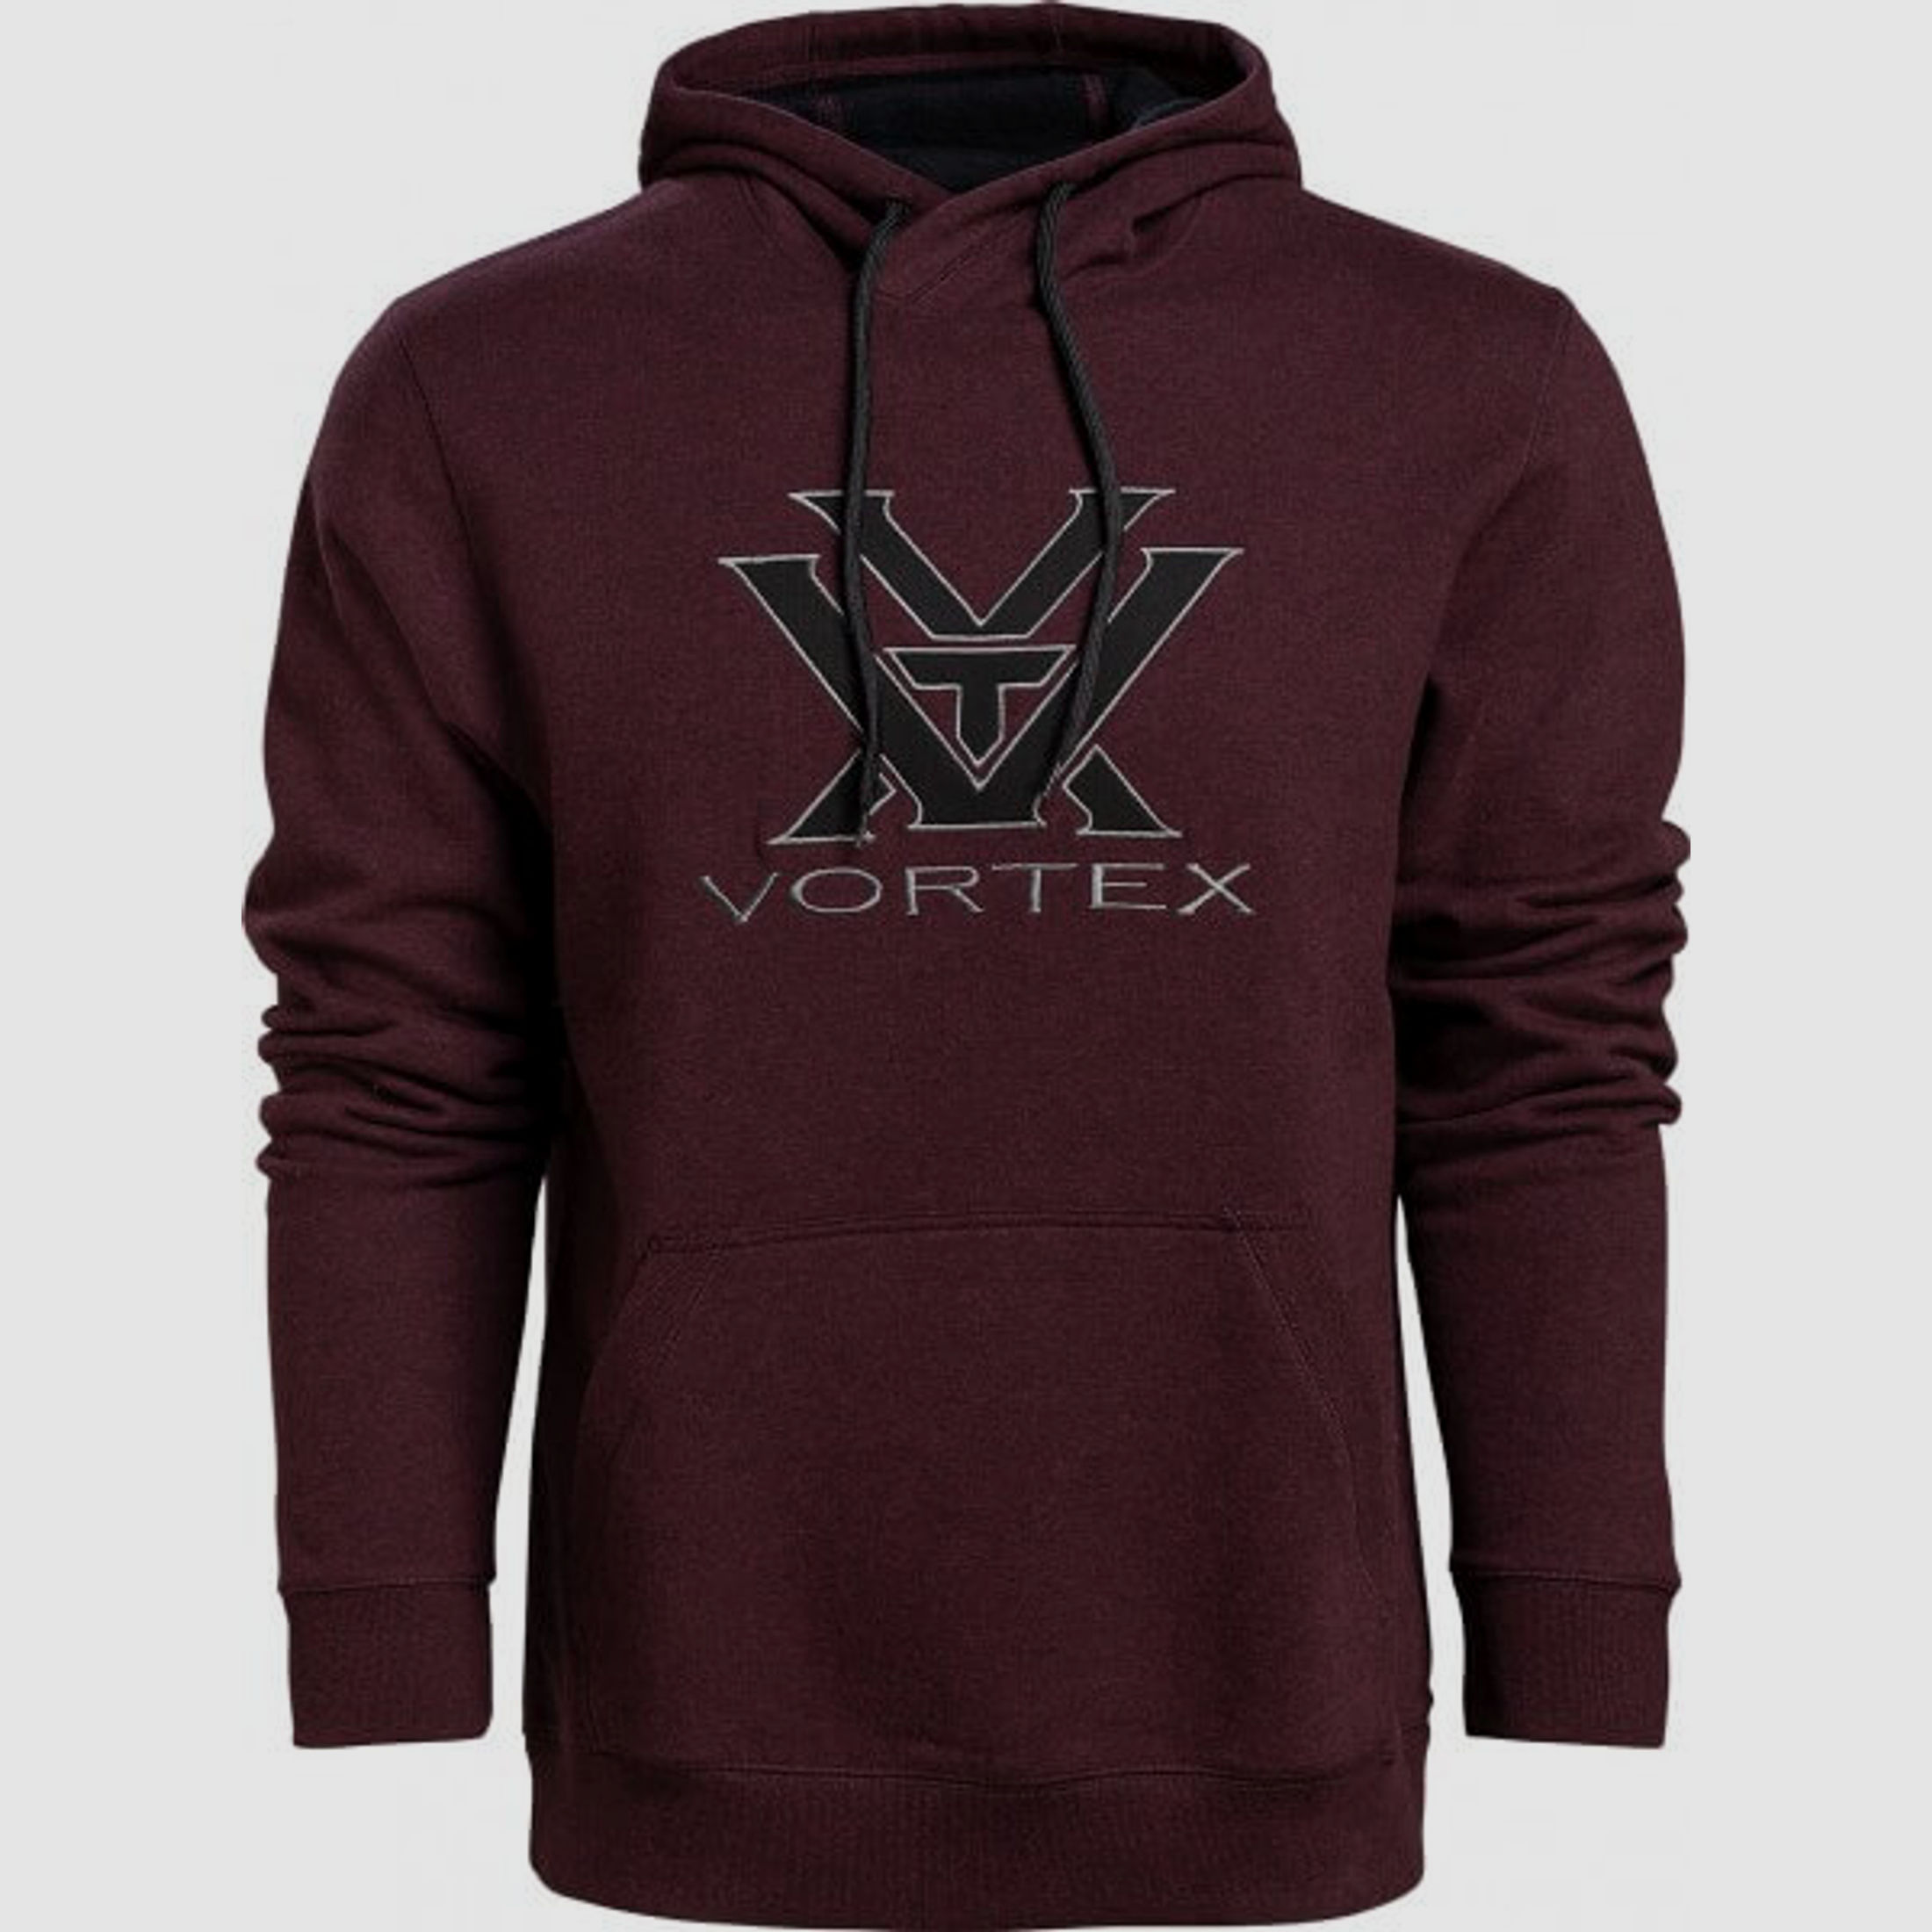 Vortex Comfort Hoodie Burgundy XL